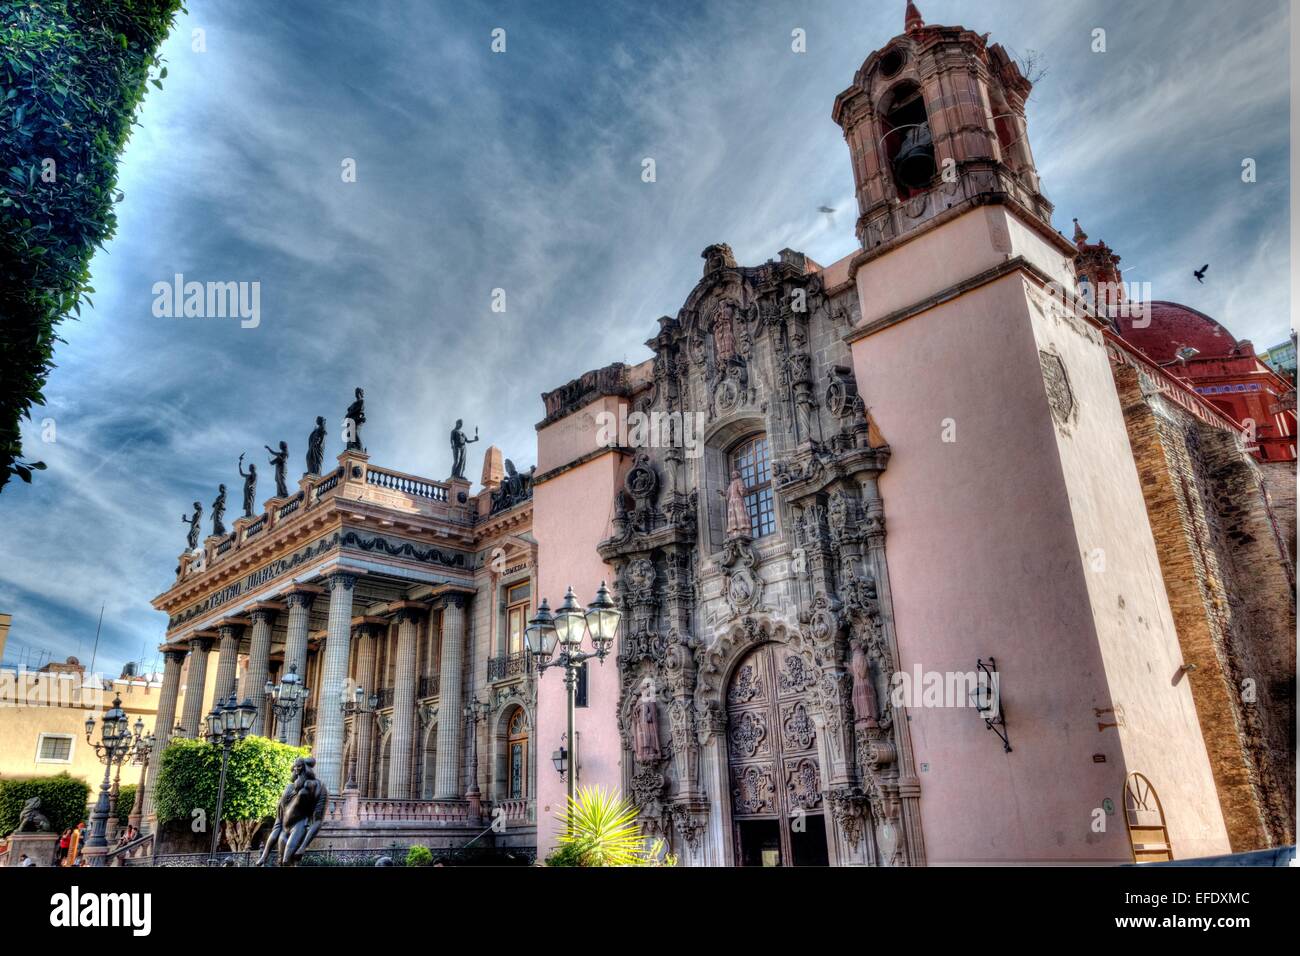 Juarez theater and a Church in Guanajuato City, Mexico Stock Photo